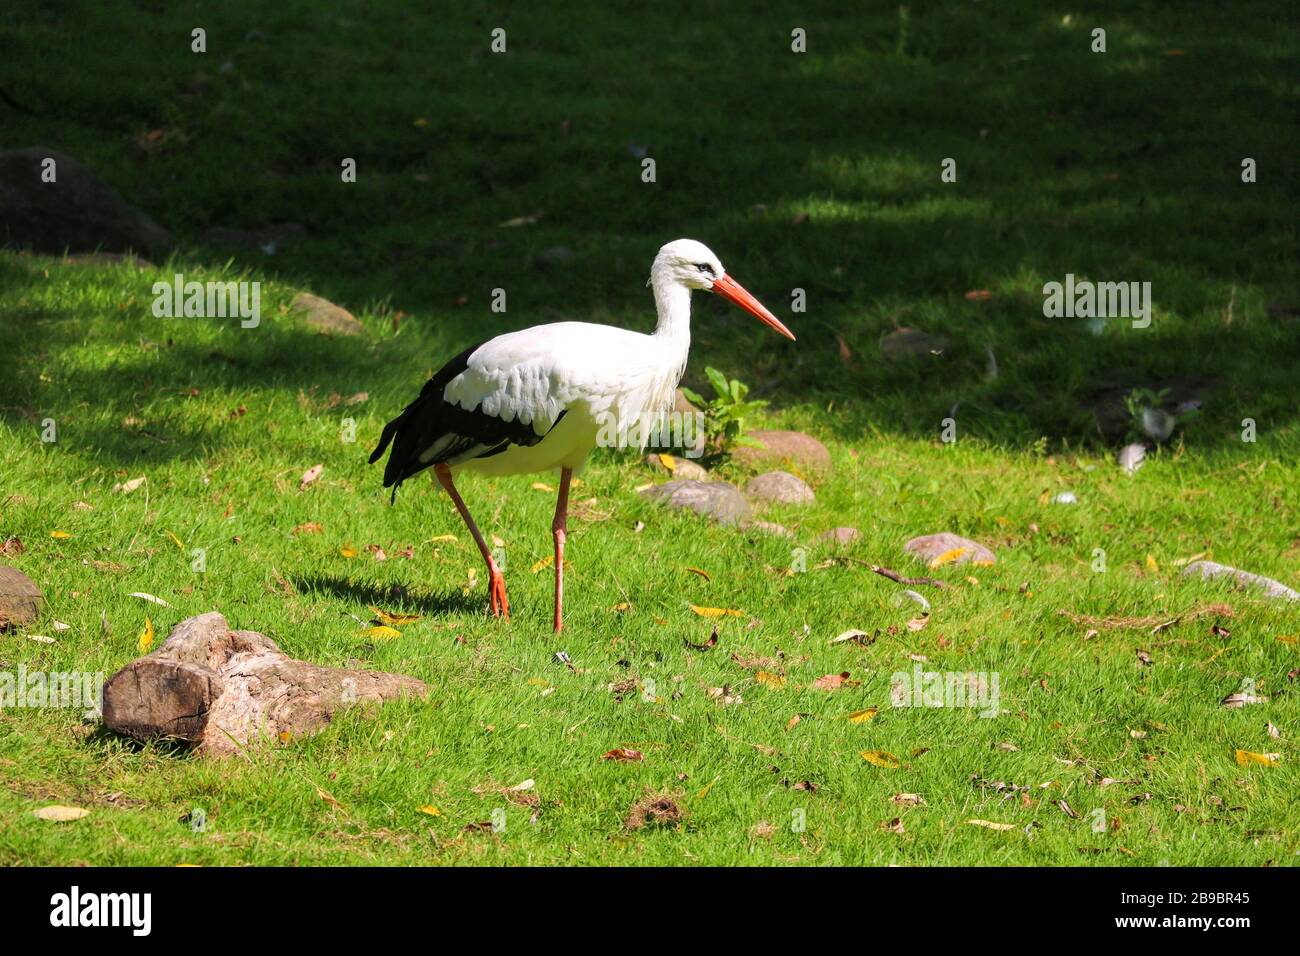 Una cicogna bianca sta camminando sull'erba verde e sta cercando il cibo Foto Stock